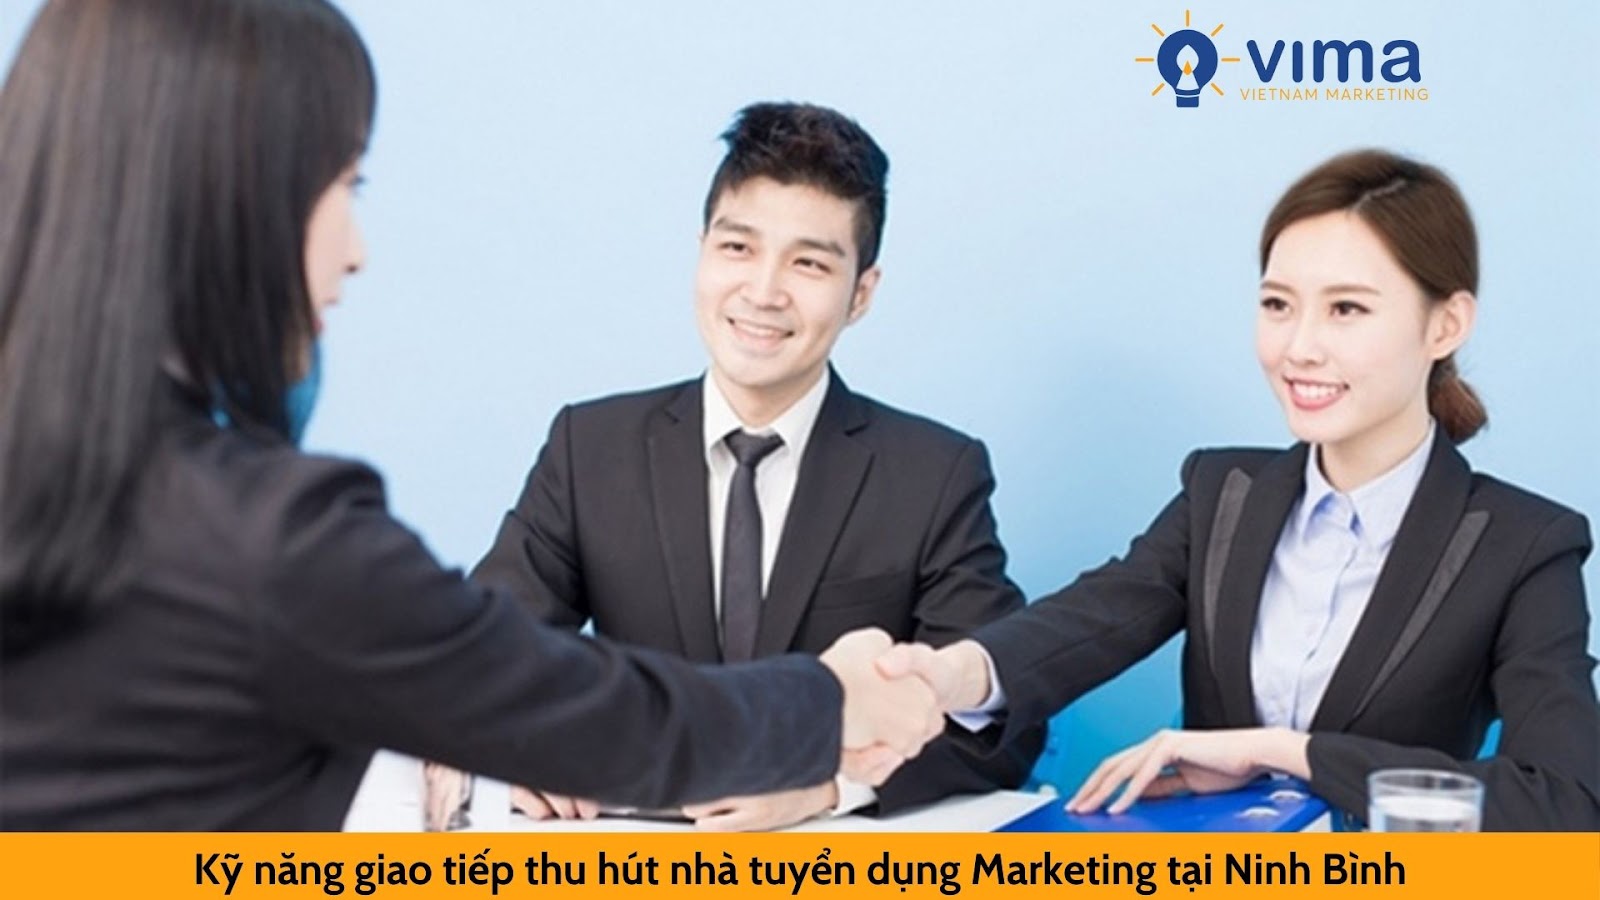 Kỹ năng giao tiếp thu hút nhà tuyển dụng Marketing tại Ninh Bình